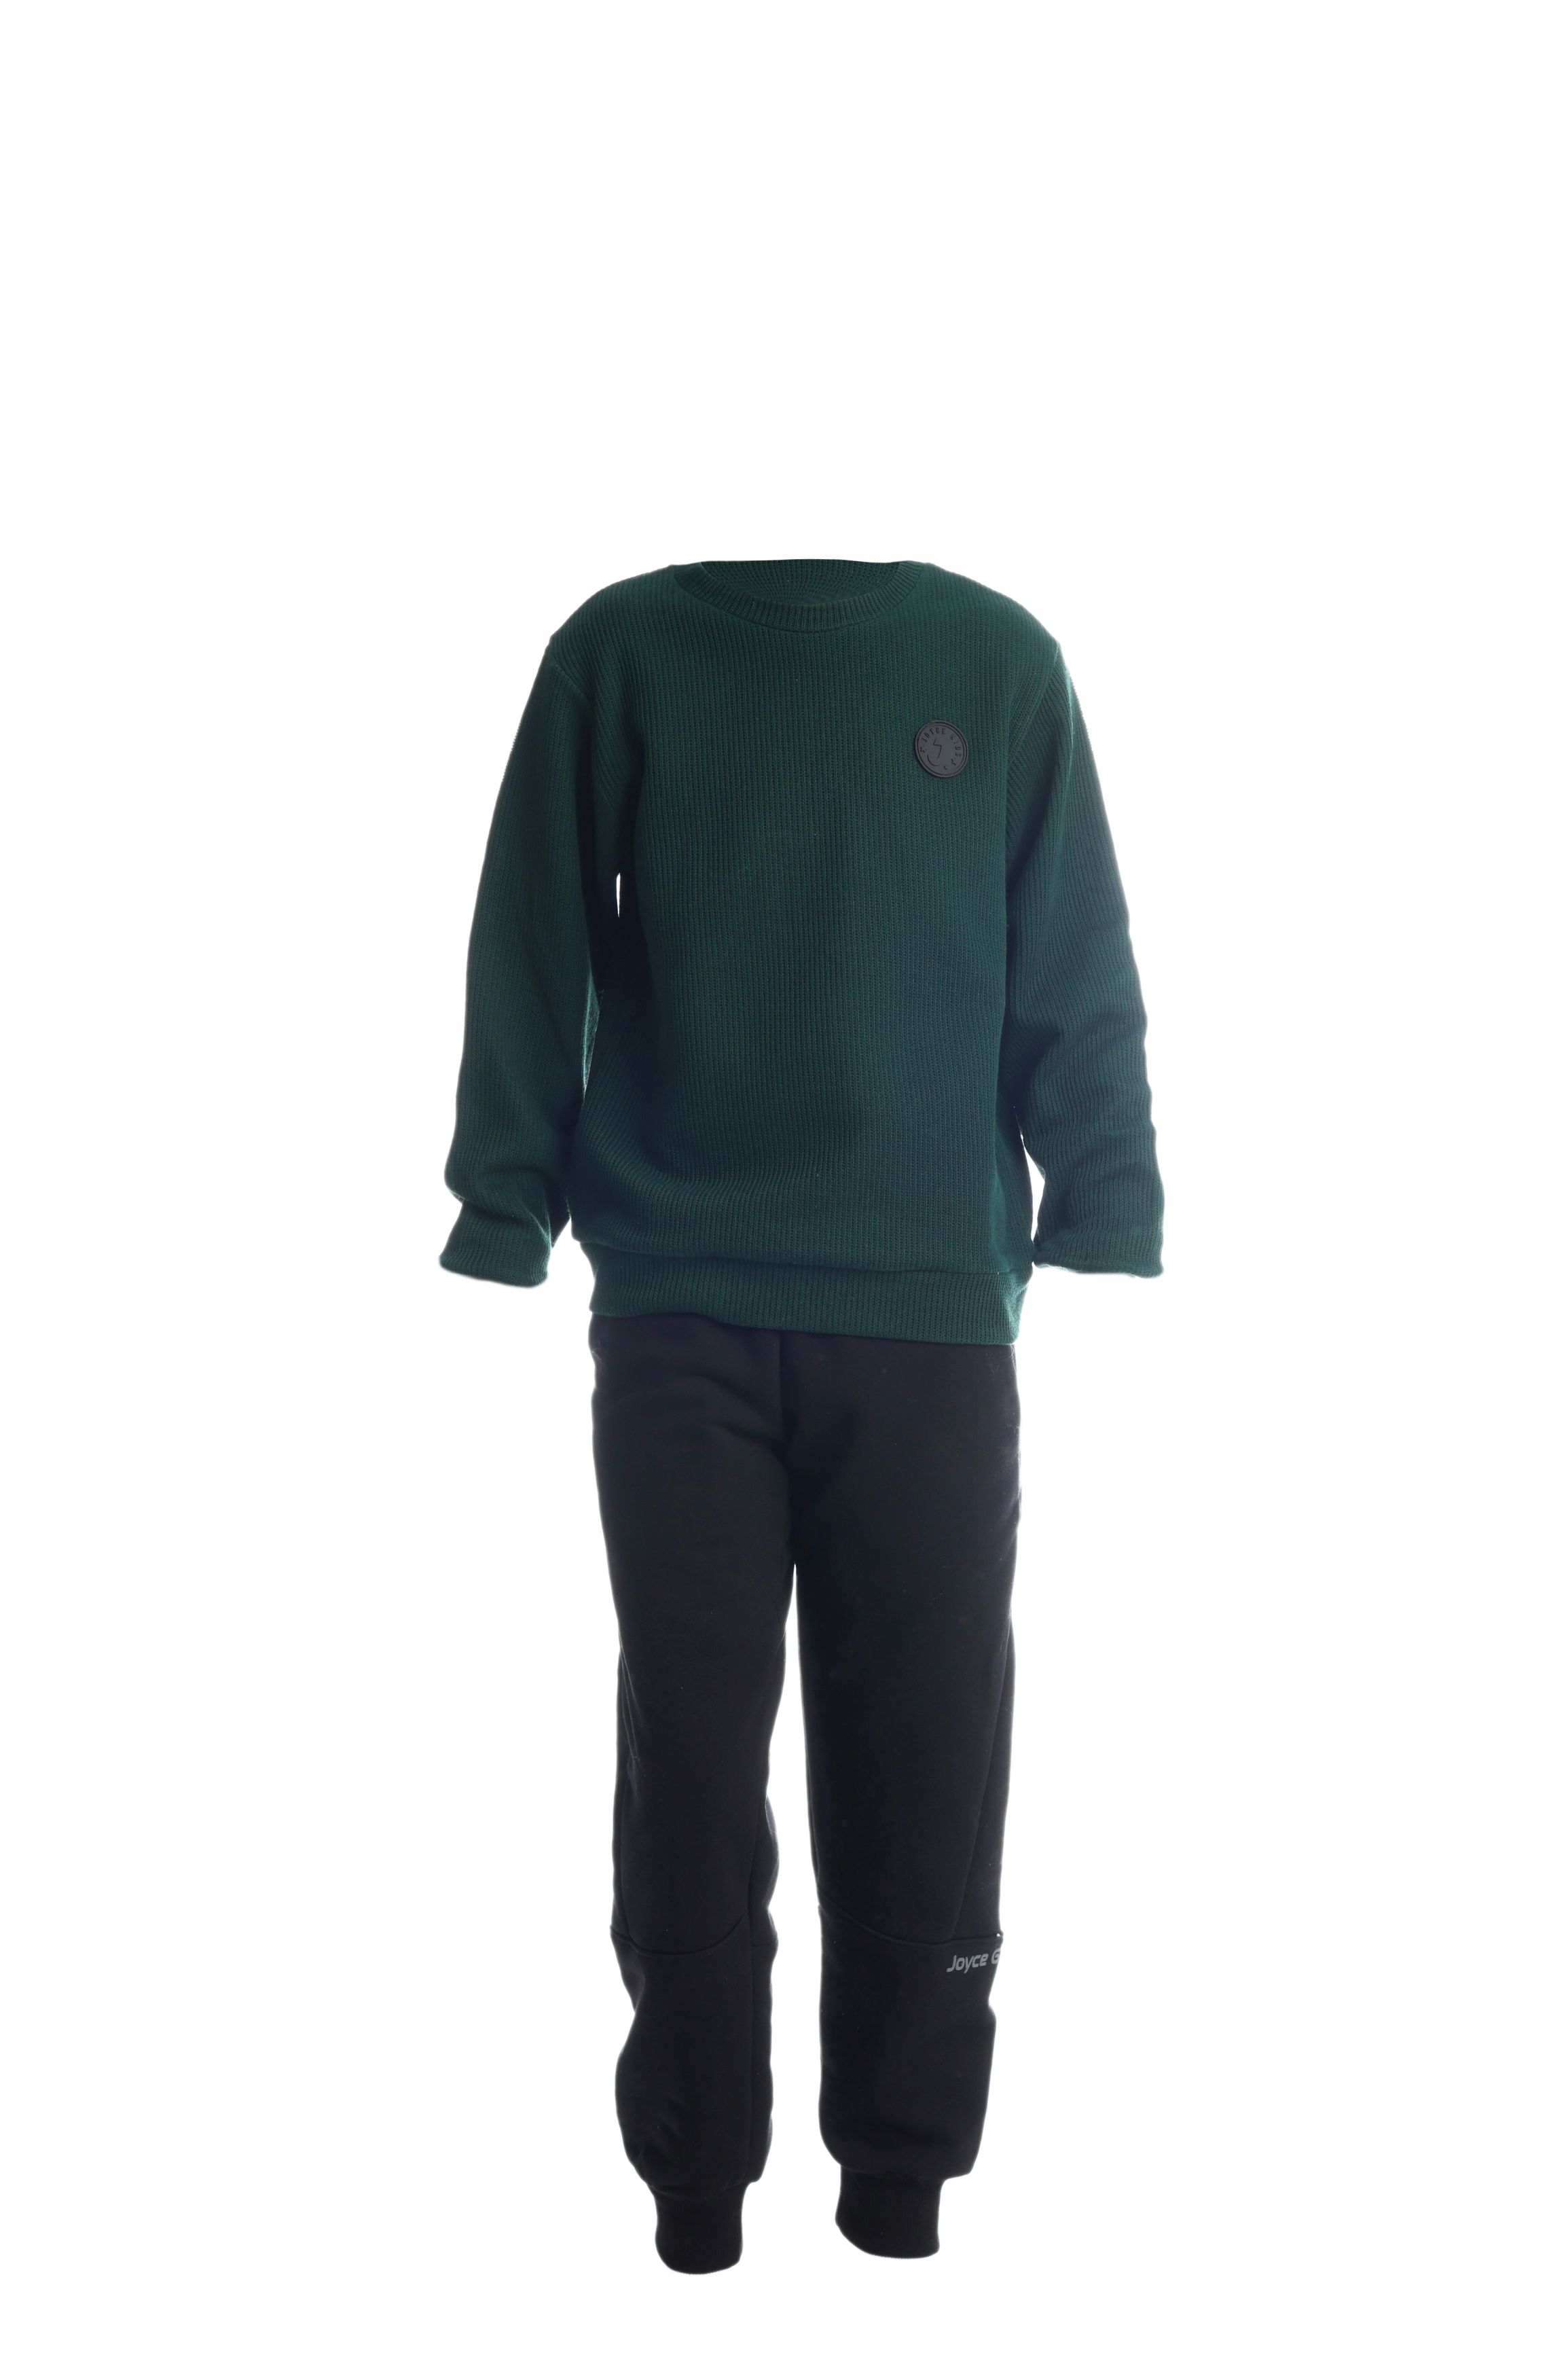 Chlapecké bavlněné tričko/svetr "TAB"/Zelená, vínová Barva: Zelená, Velikost: vel. 6 (114/120 cm)